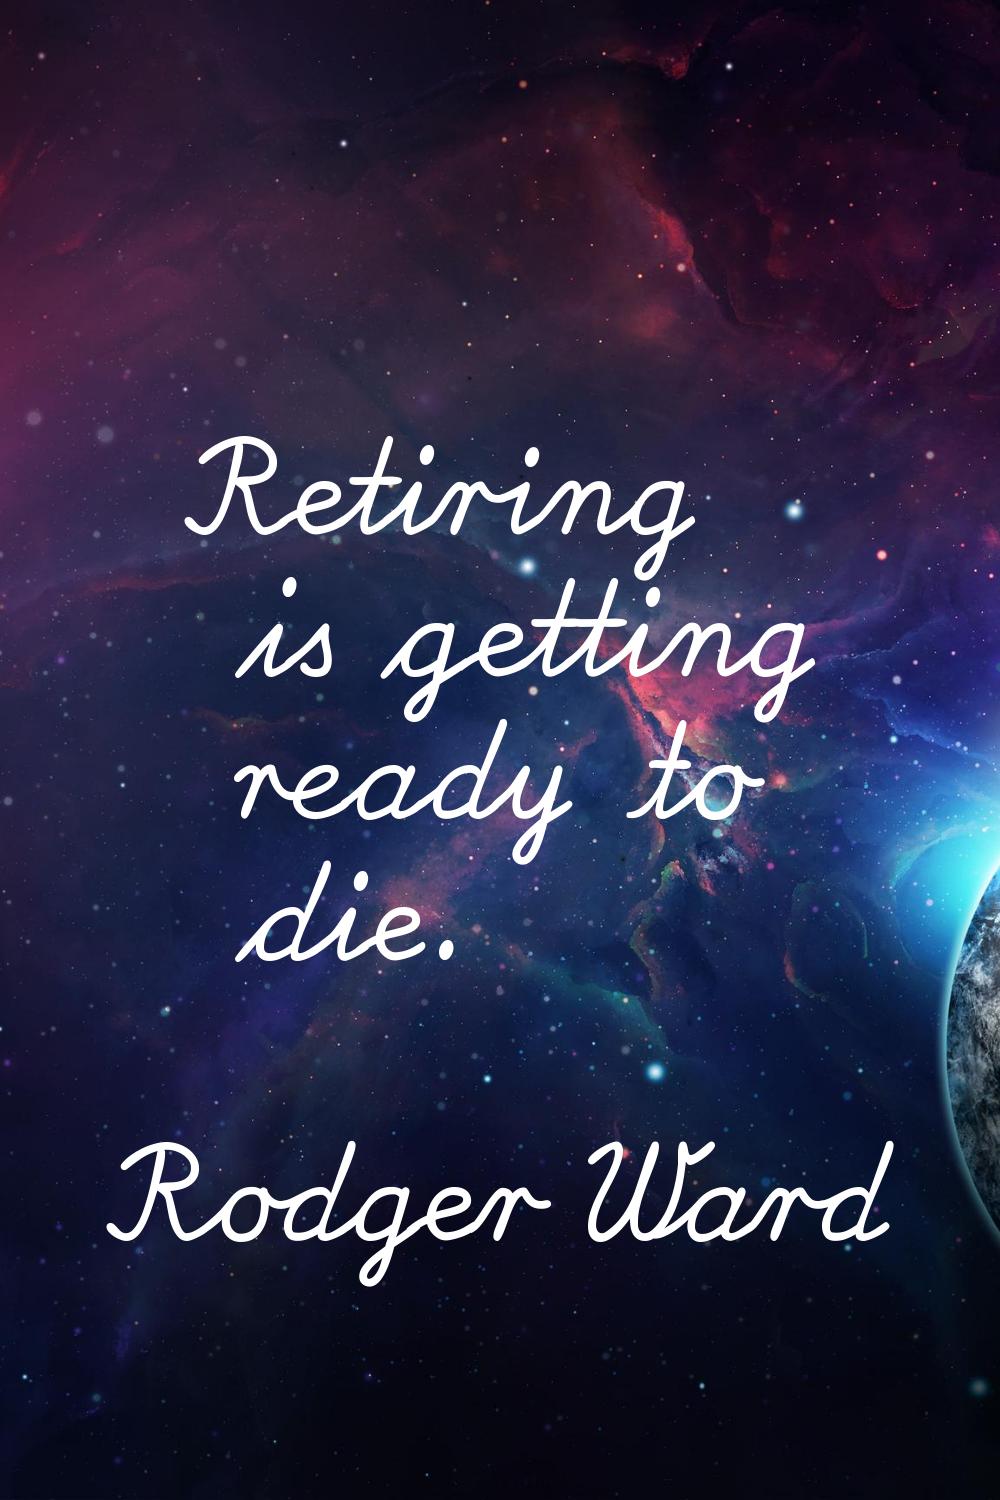 Retiring is getting ready to die.